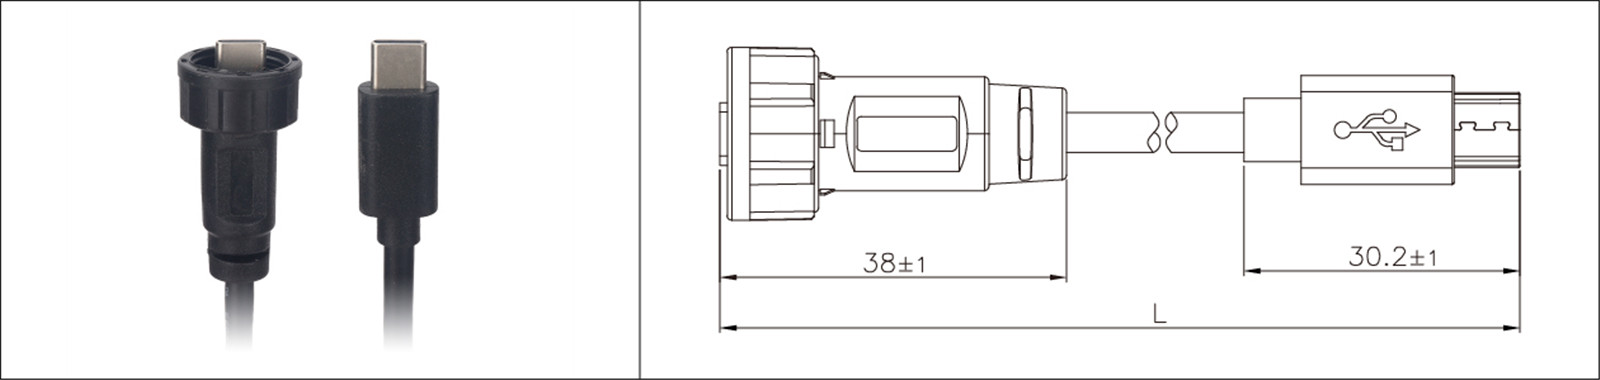 Micro USB montaje en panel tipo 2.0 3.0 hembra y macho impermeable IP67 cable de extensión sobremoldeado conector industrial-02 (7)